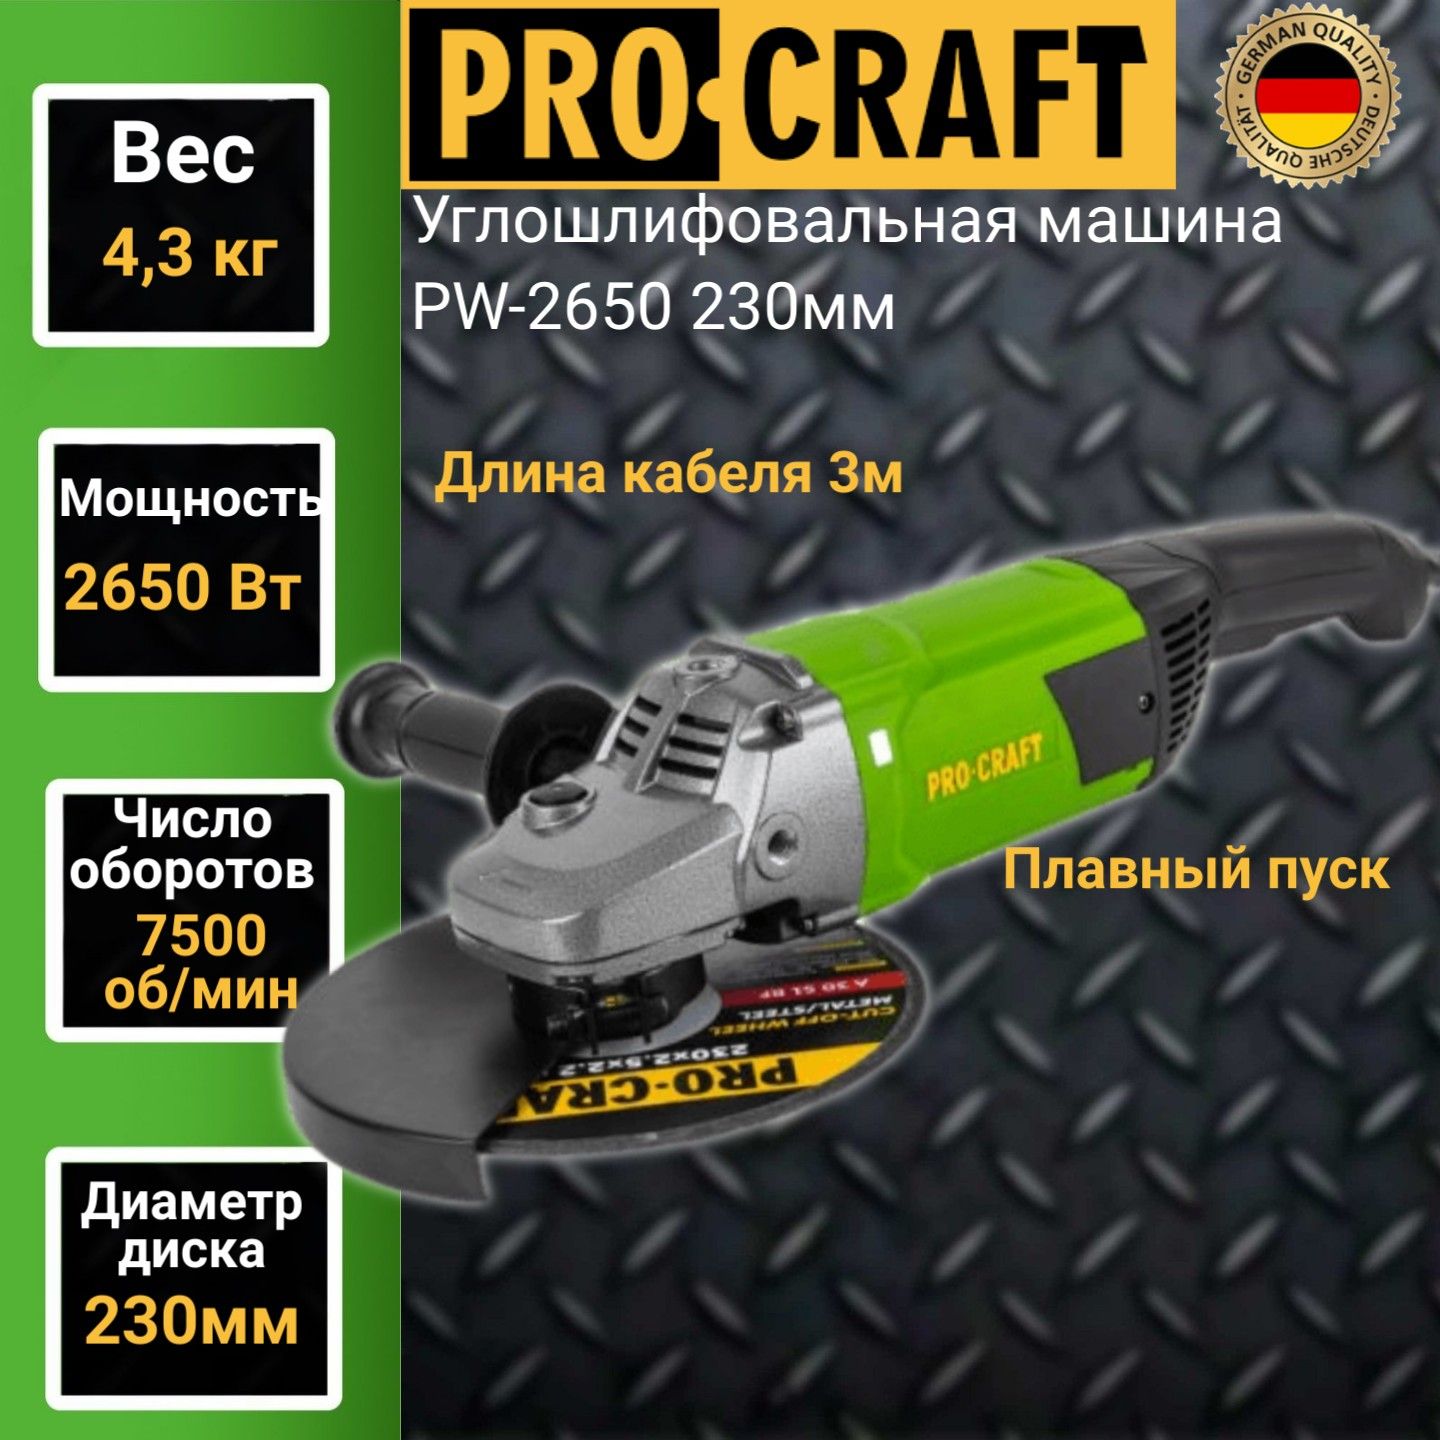 Углошлифовальная машина болгарка Procraft PW 2650, 230мм круг, 2650Вт, 7500об/мин угловая шлифовальная машина modeco expert mn 93 011 230мм 2300вт